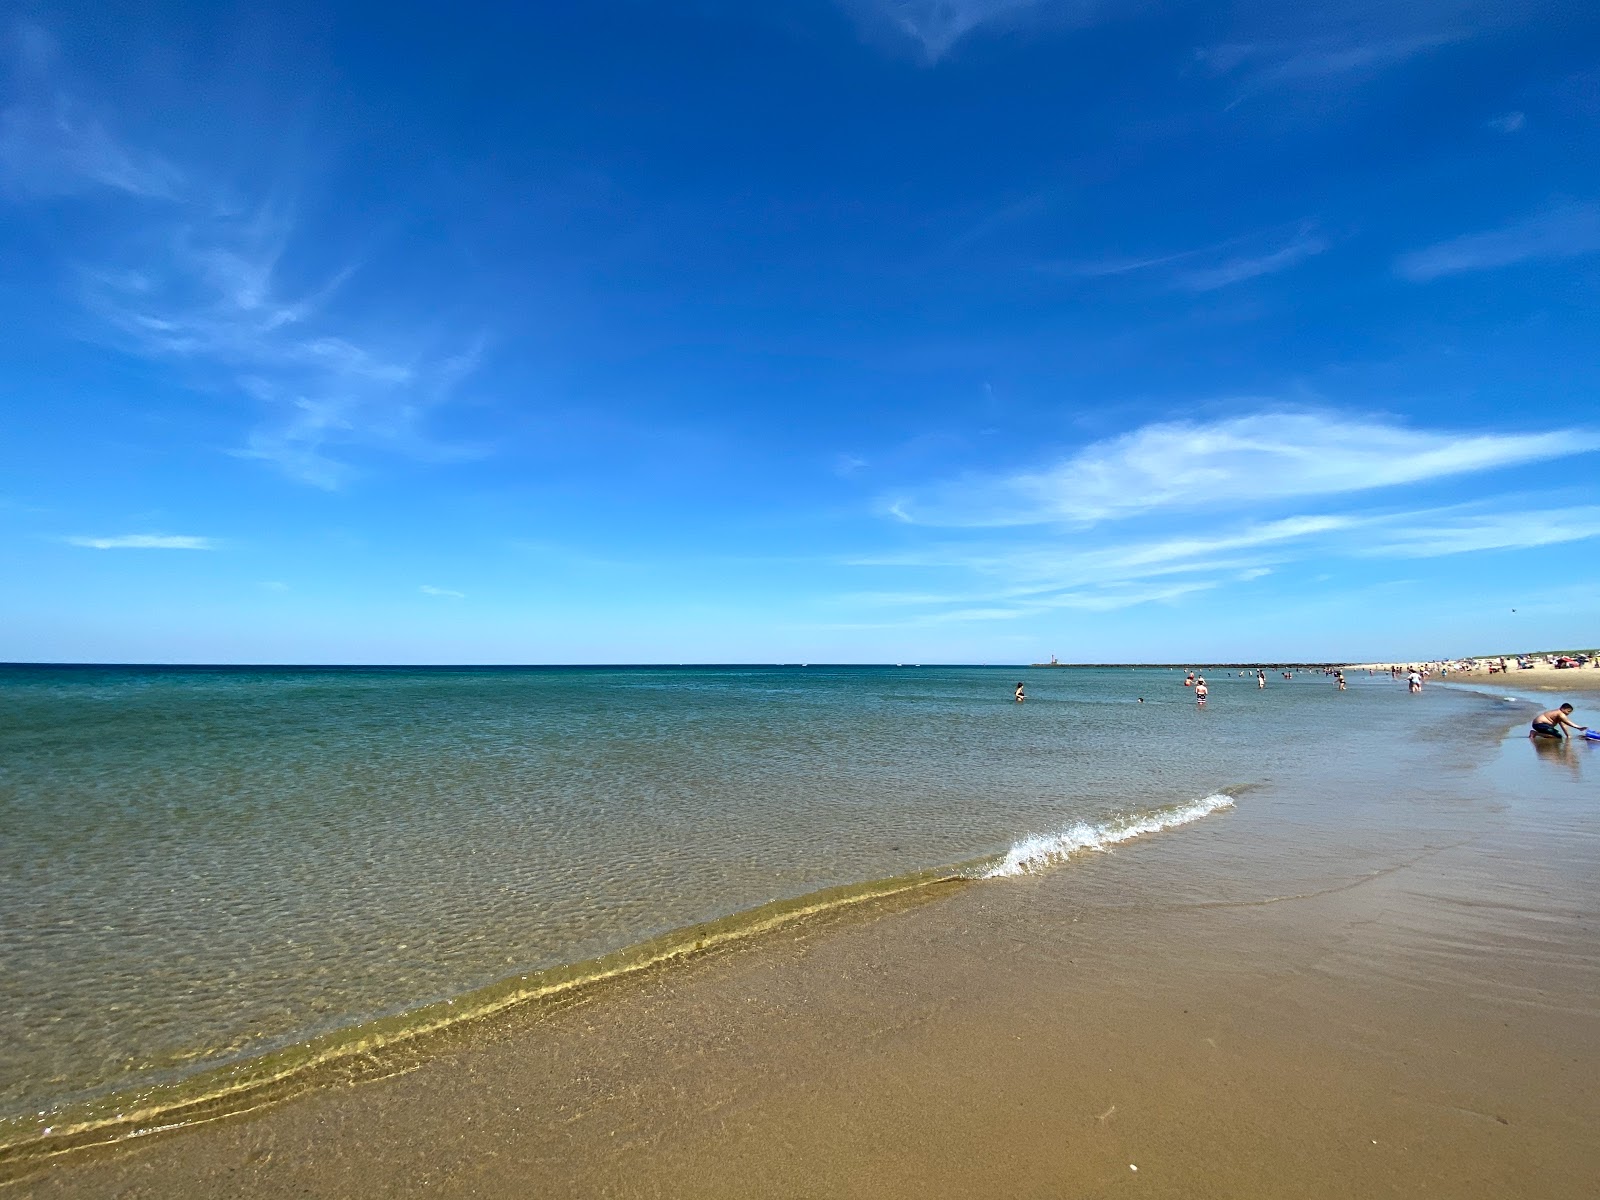 Zdjęcie Scusset beach z powierzchnią jasny piasek